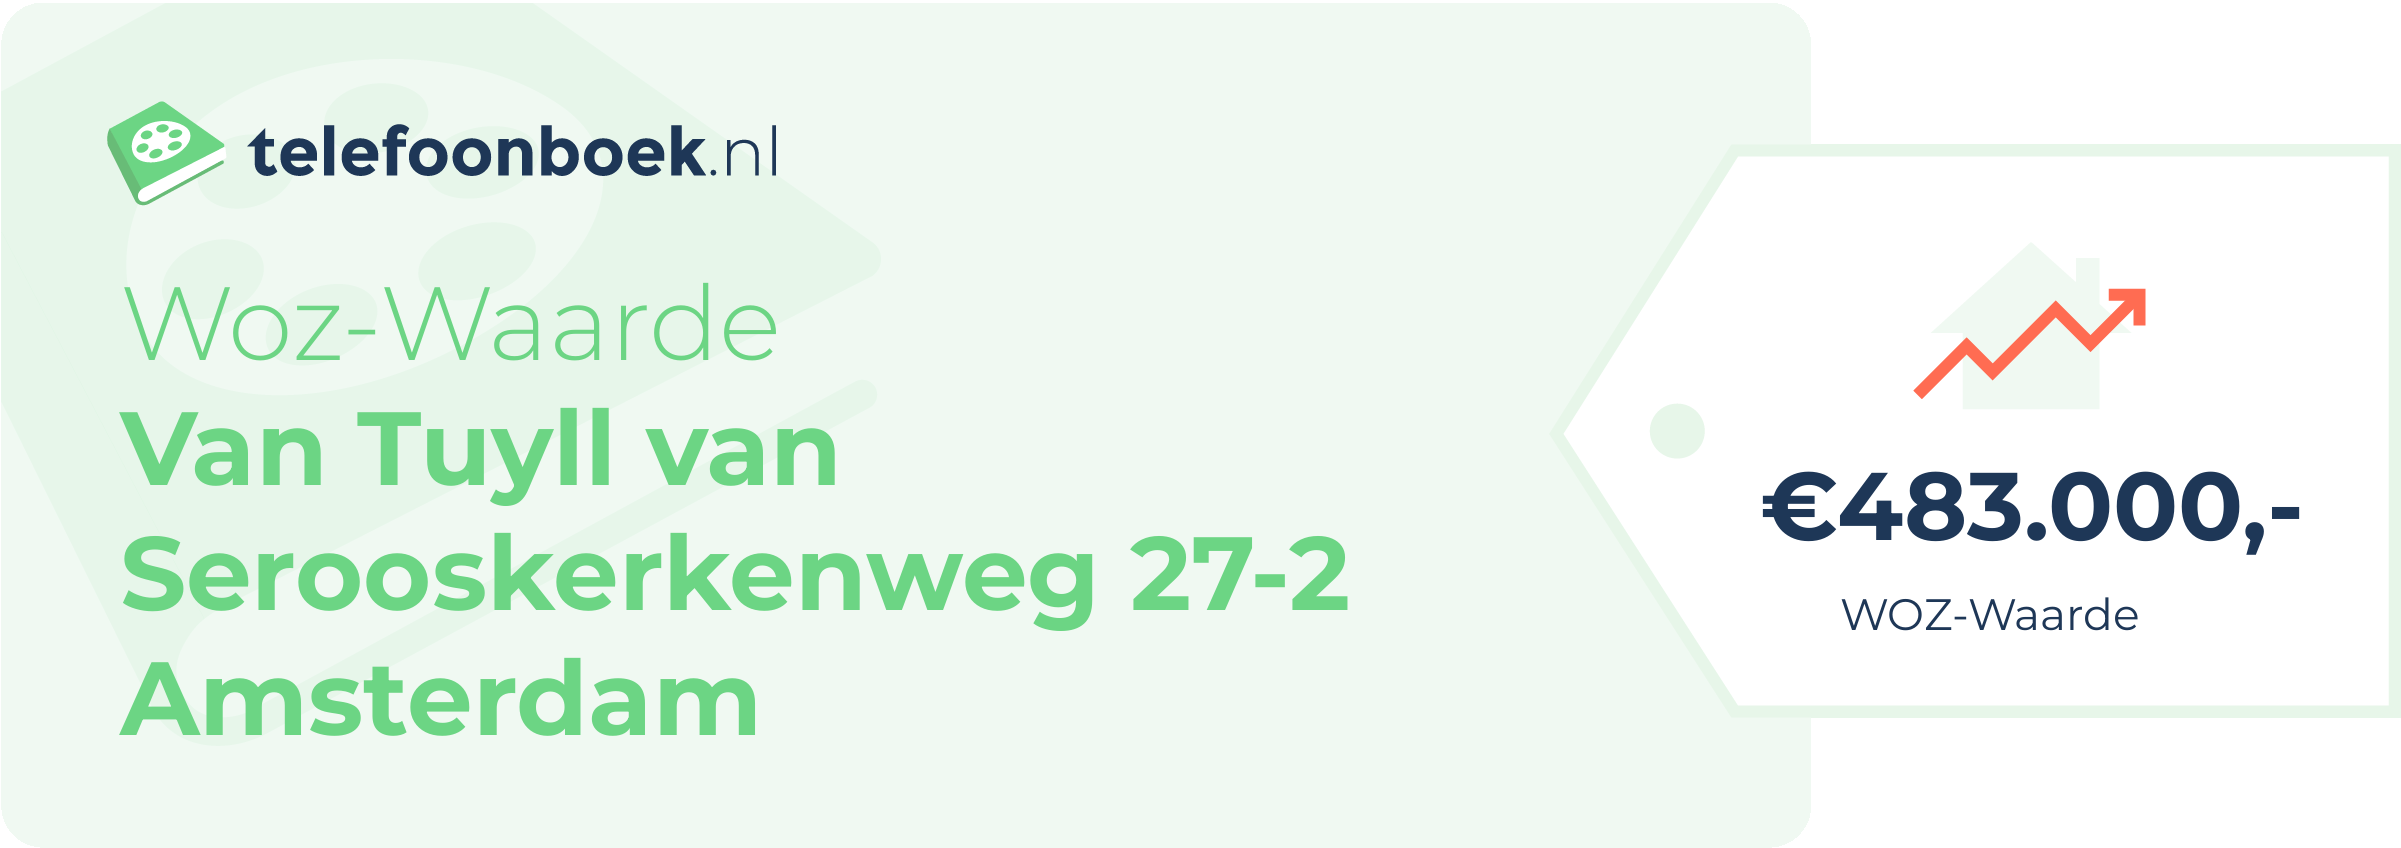 WOZ-waarde Van Tuyll Van Serooskerkenweg 27-2 Amsterdam